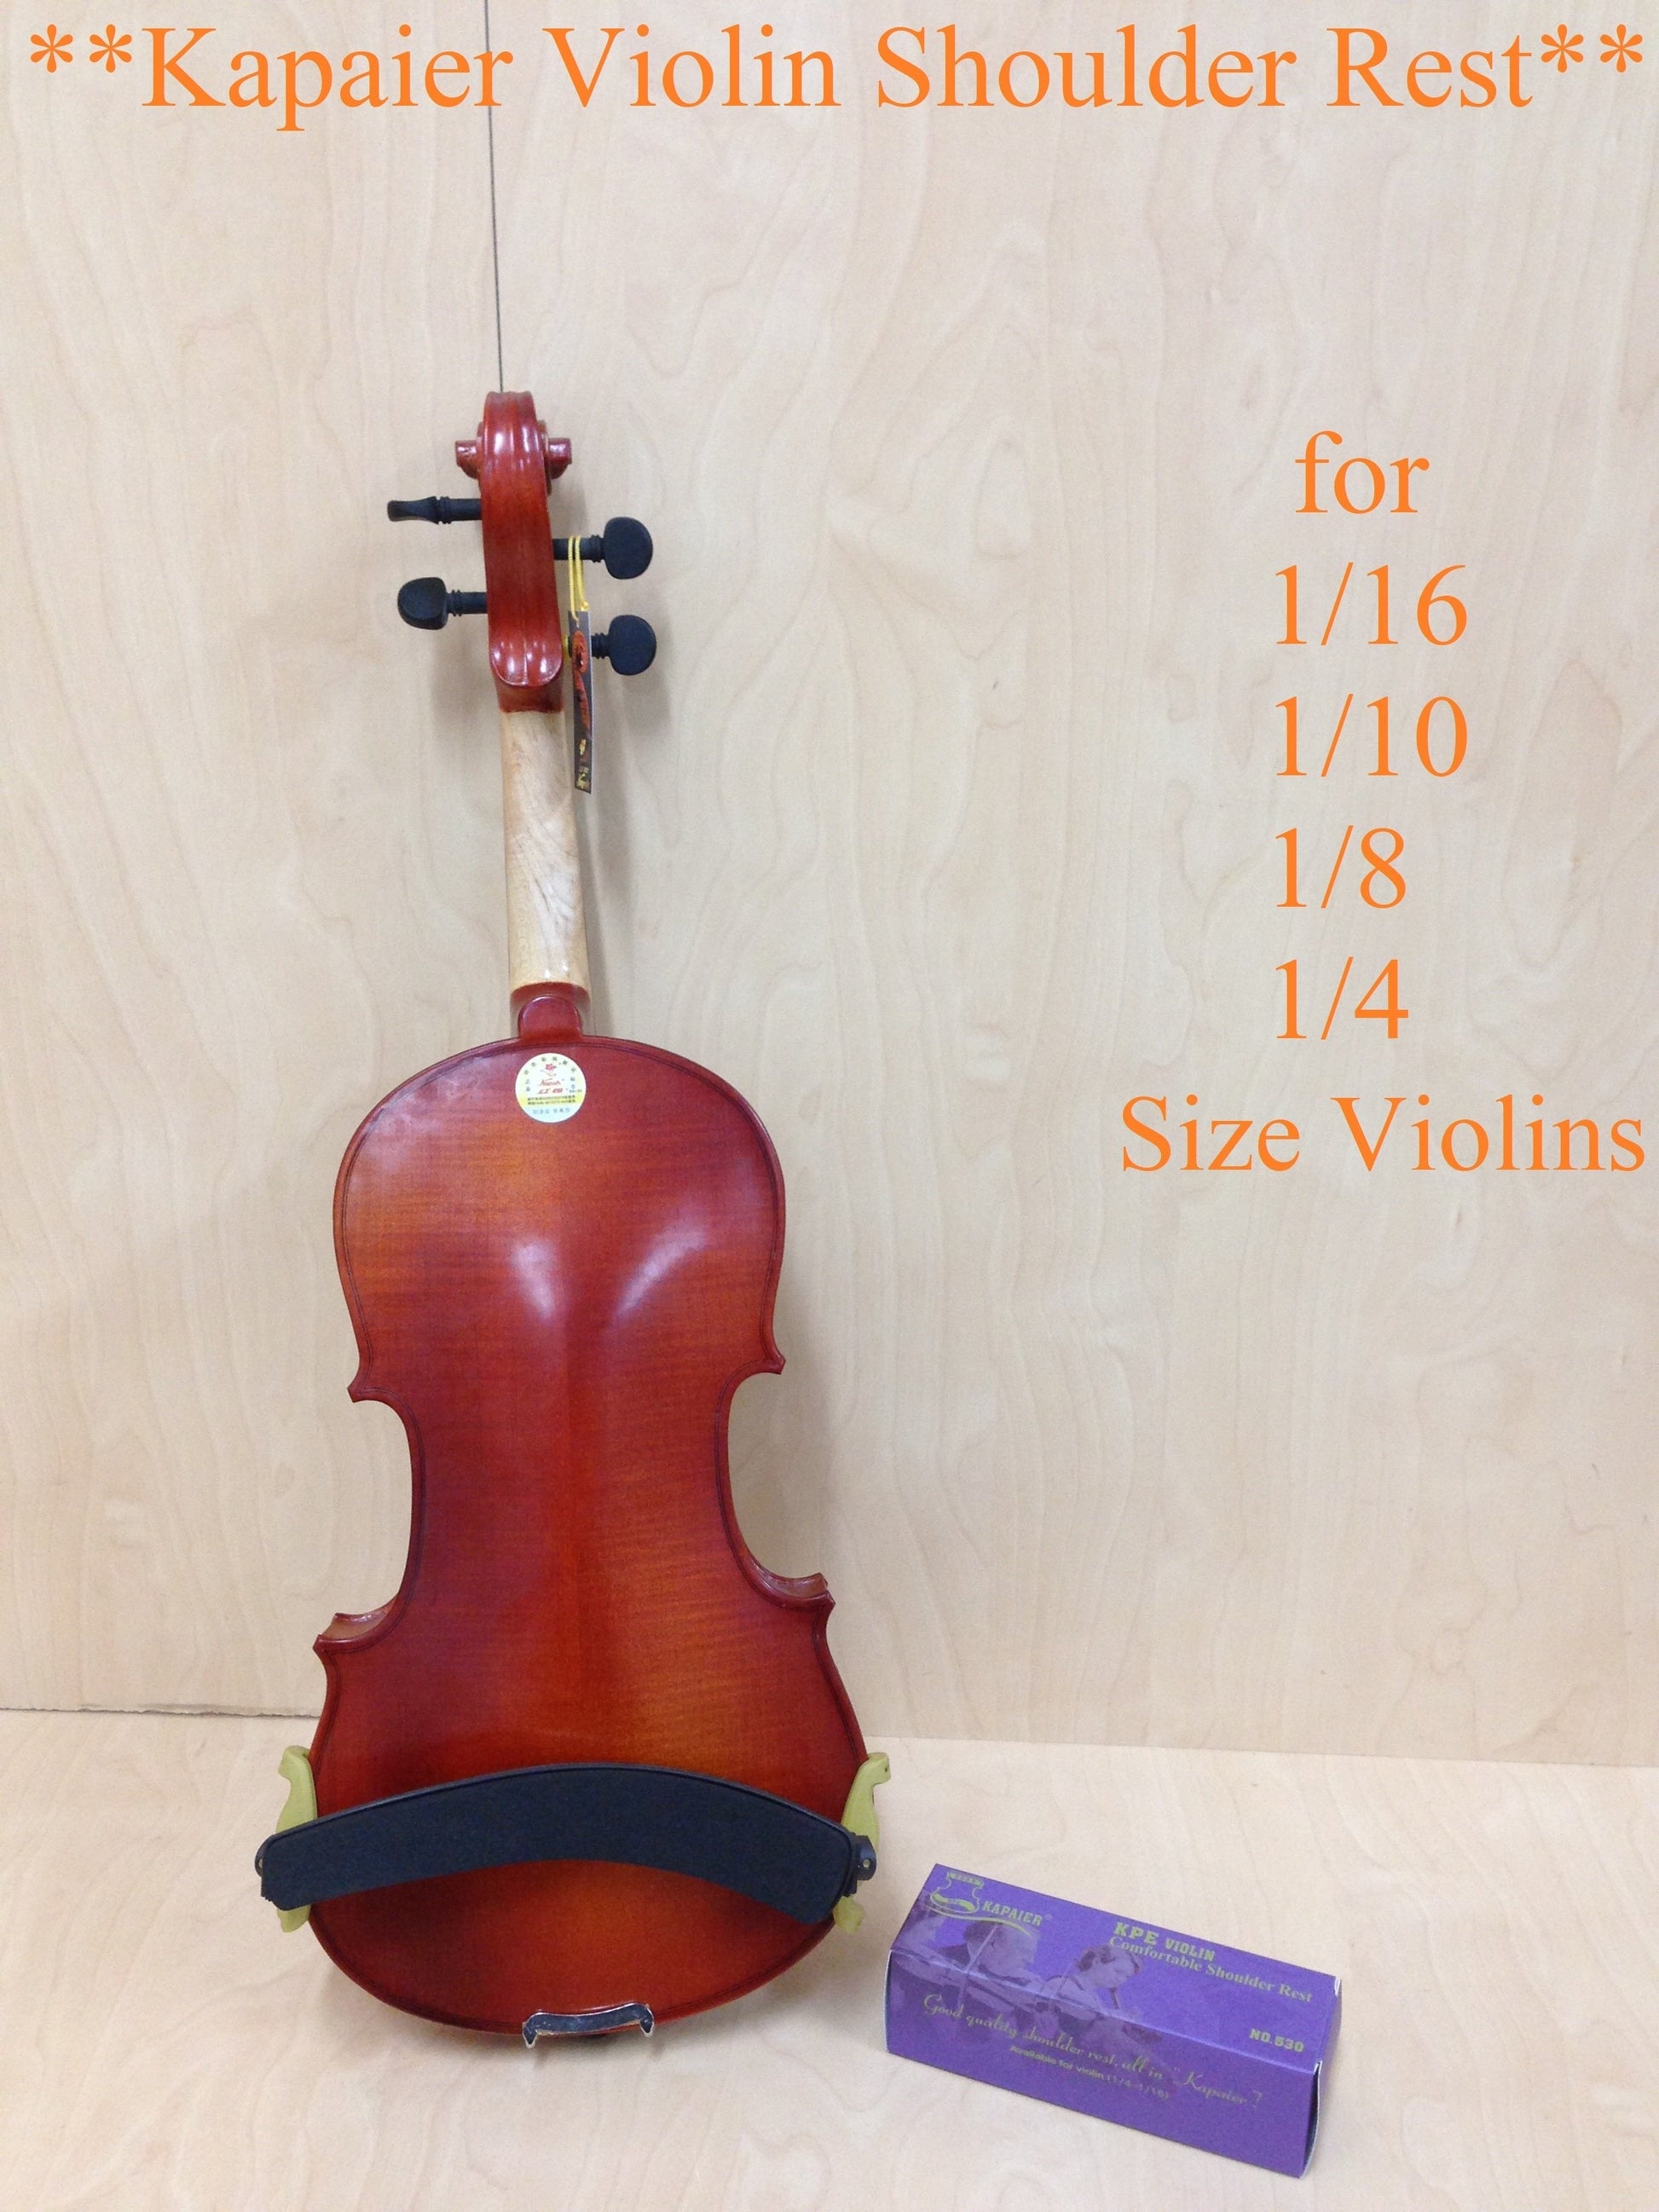 Kapaier KPE530 Violin Shoulder Rest Adjustable For  1/16 ~ 1/4 Size Kun Style with Rosin